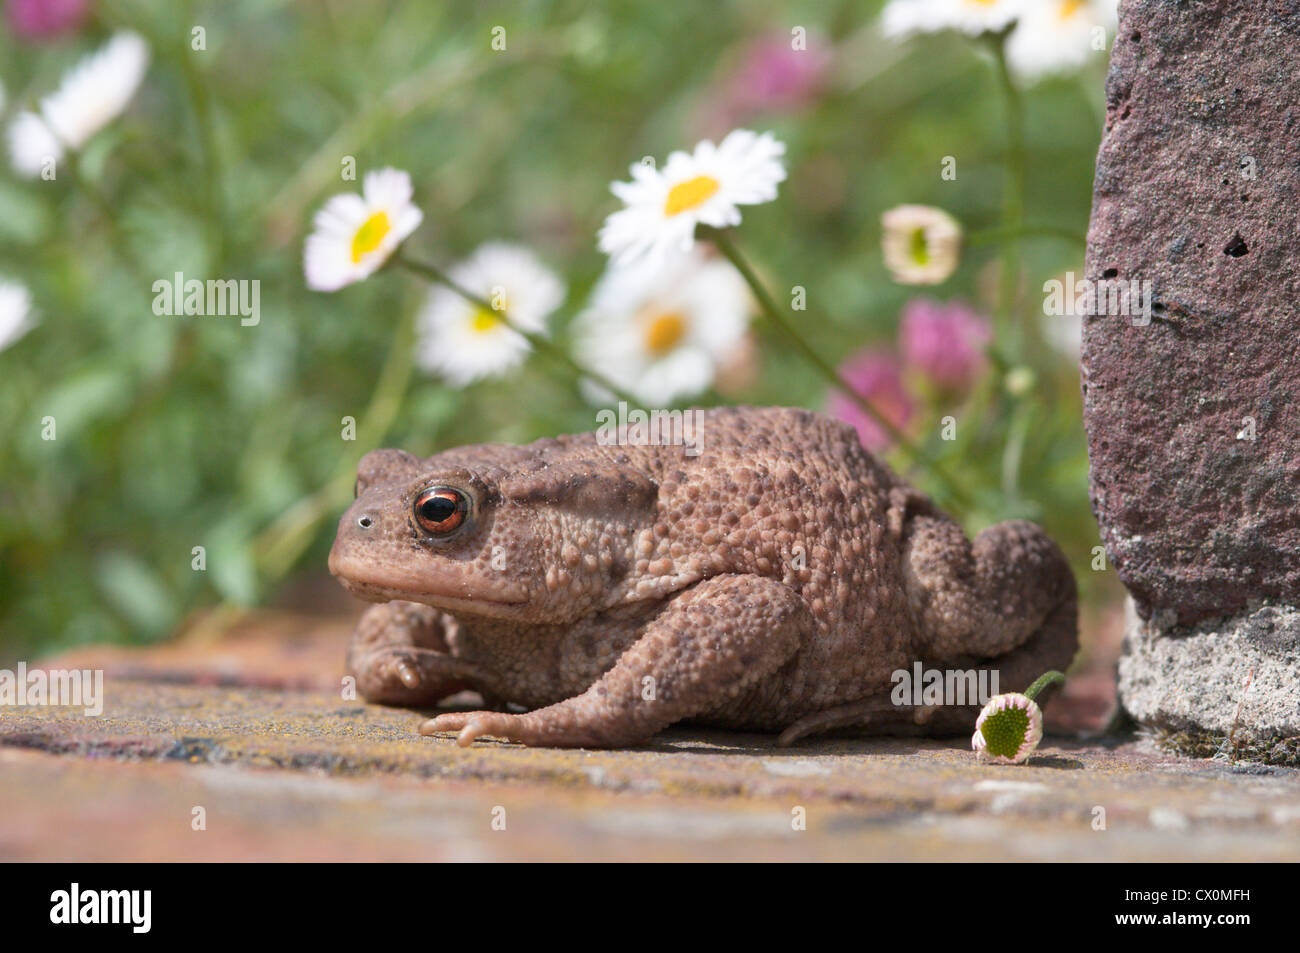 Crapaud commun (Bufo bufo) dans un jardin, West Sussex, Angleterre, Royaume-Uni. Juillet. Banque D'Images